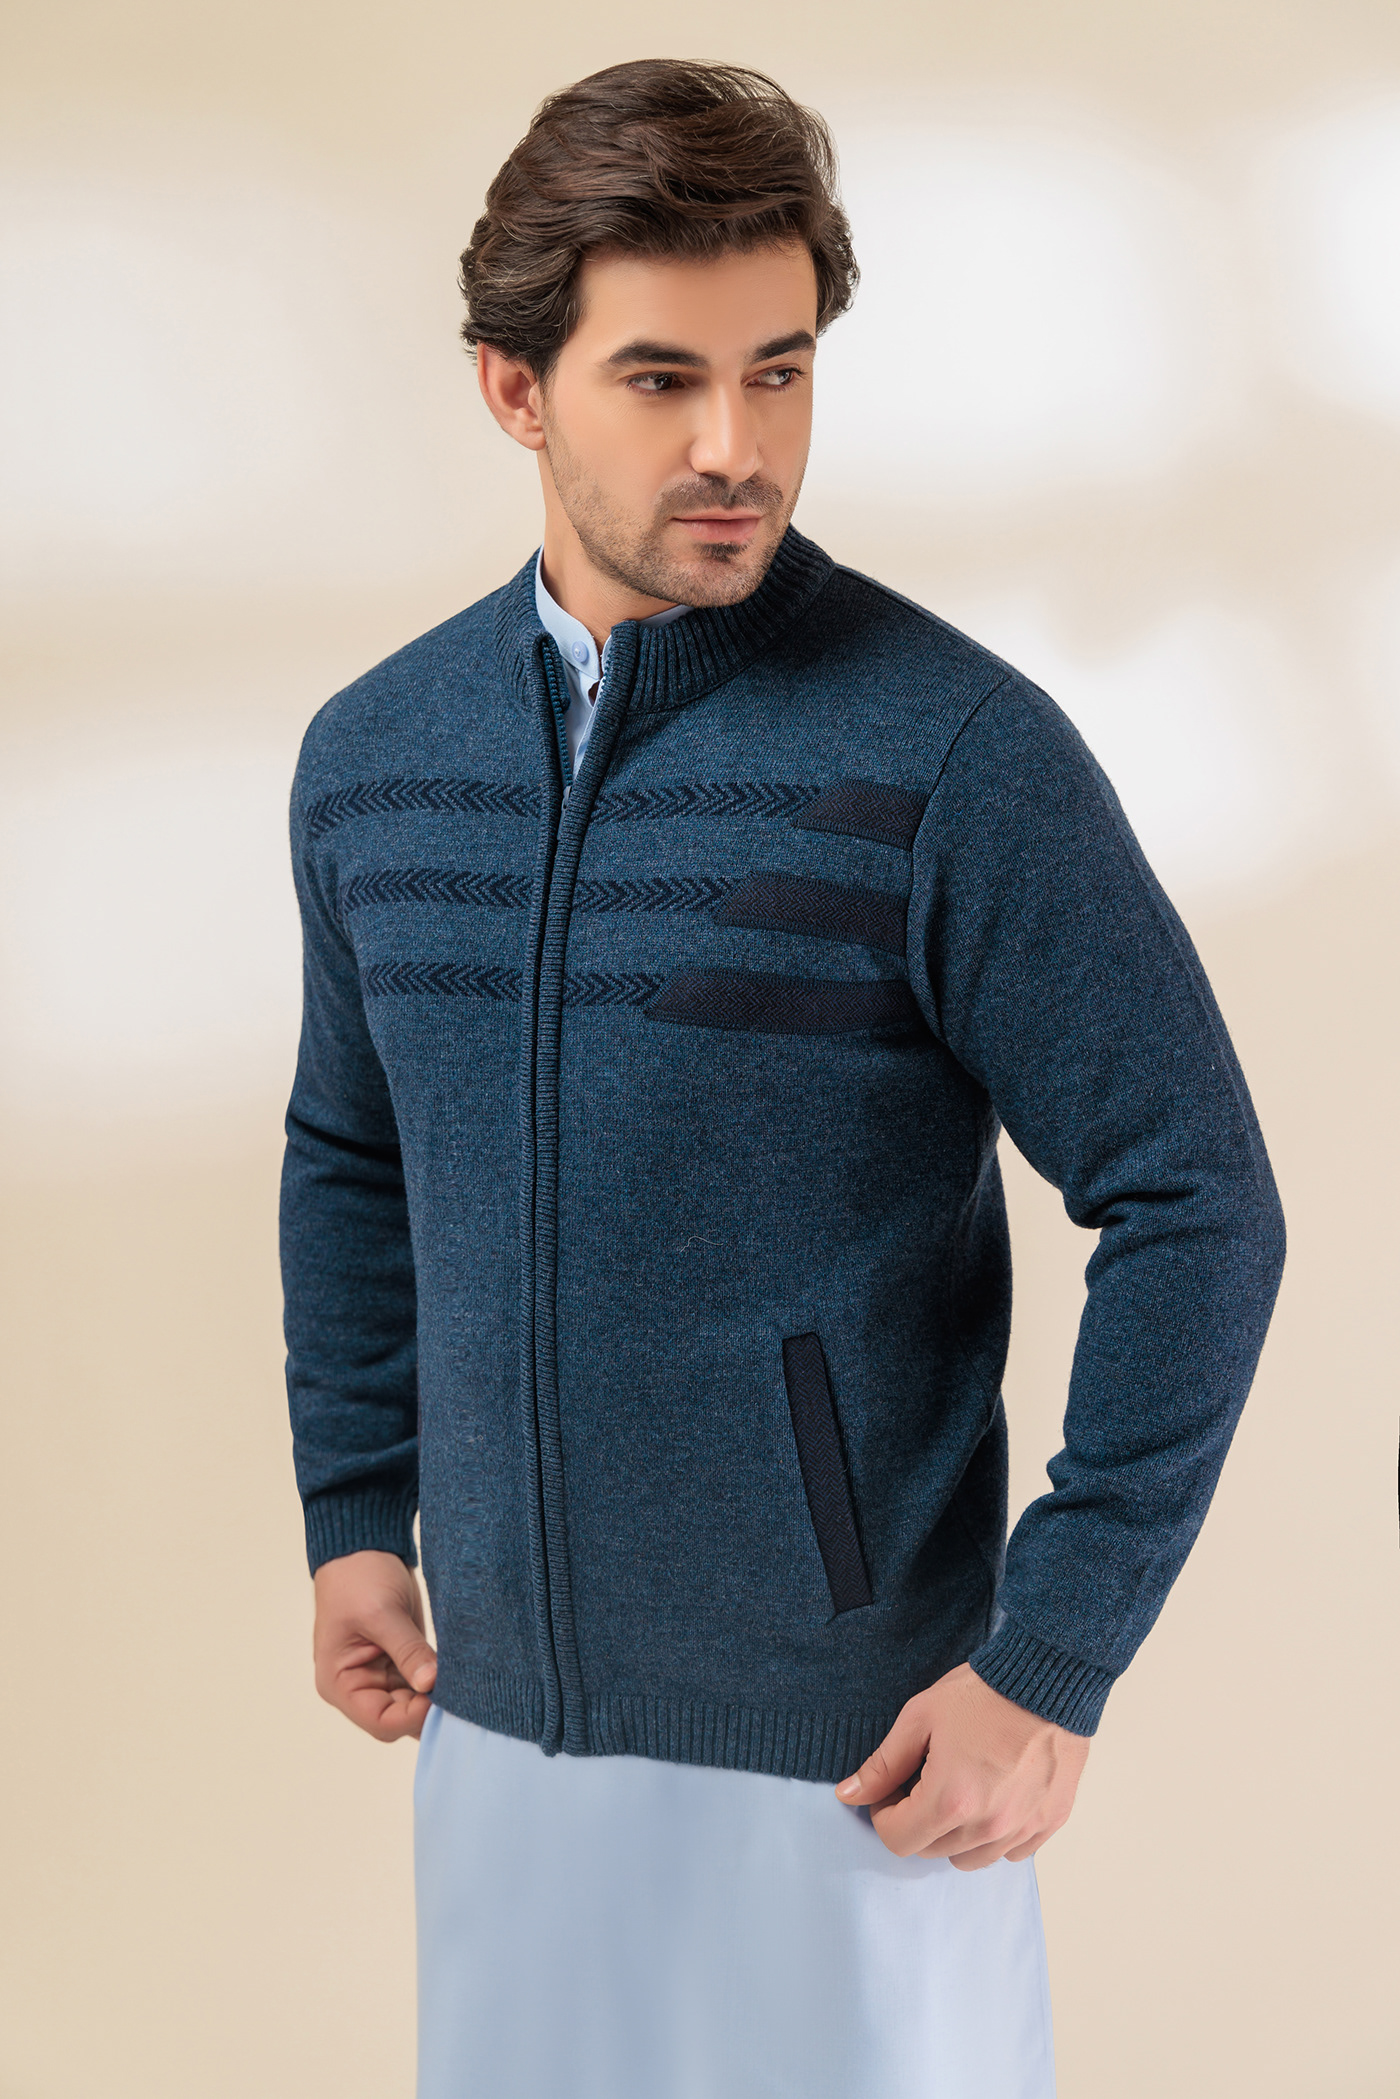 wool yarn knitwear Menswear Sweaters Zipper apparel WINTER COLLECTION Fashion garment